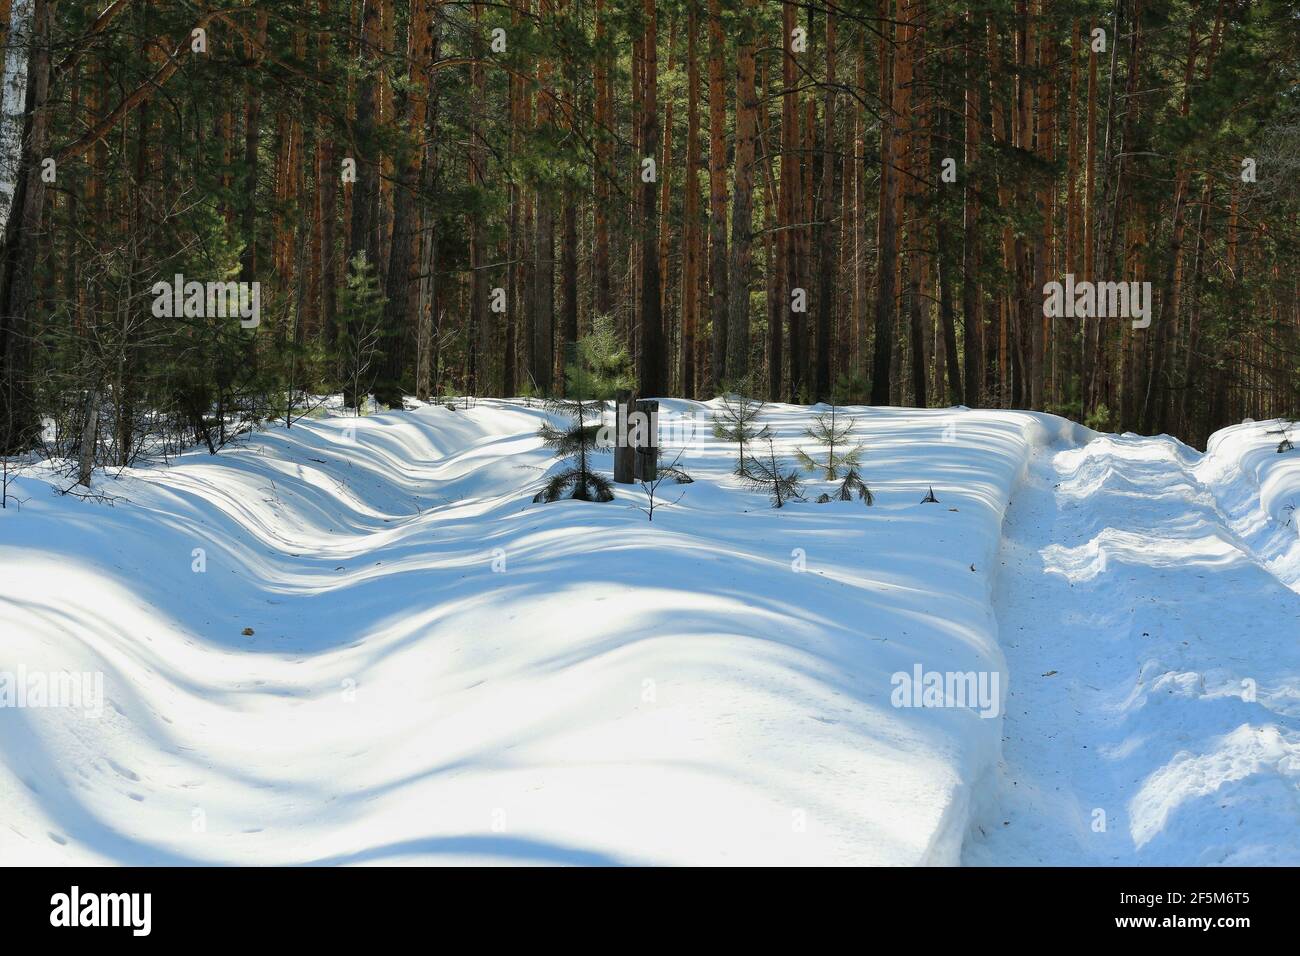 Une route couverte de neige profonde et une bande de protection forestière dans une forêt de pins d'hiver par une journée ensoleillée. Poteaux en bois avec marquages carrés forestiers. Banque D'Images